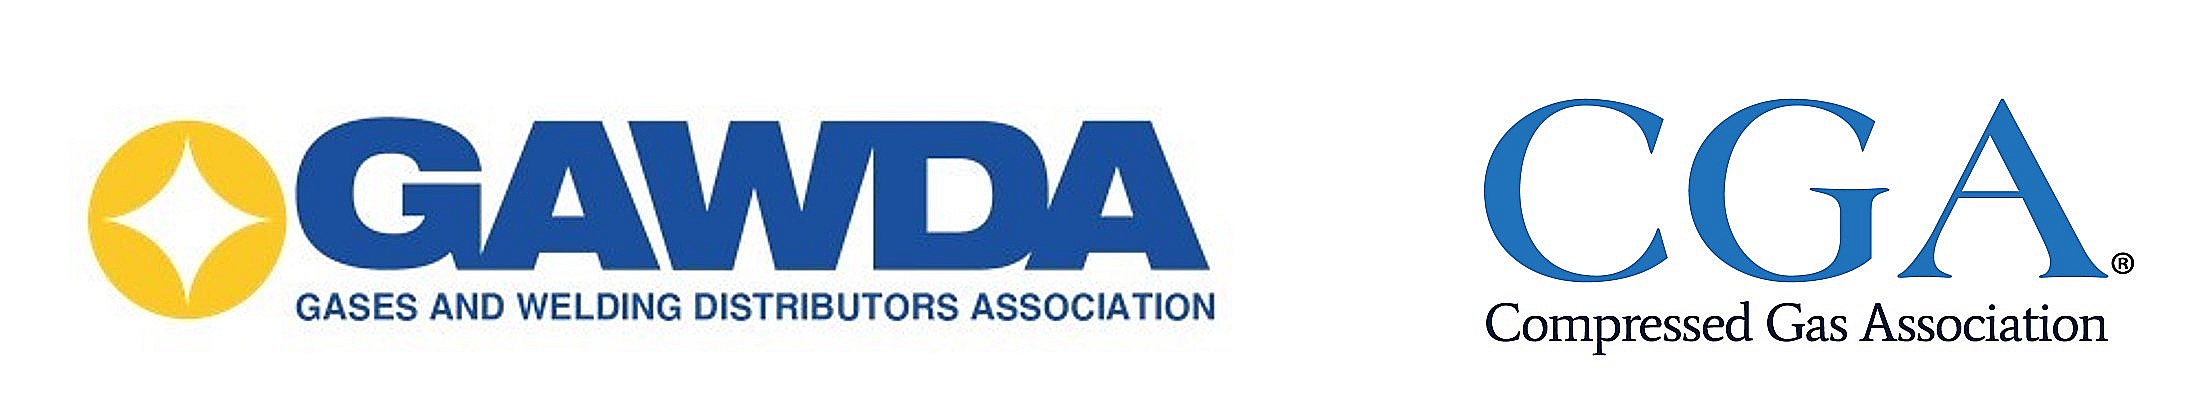 GAWDA & CGA Logos